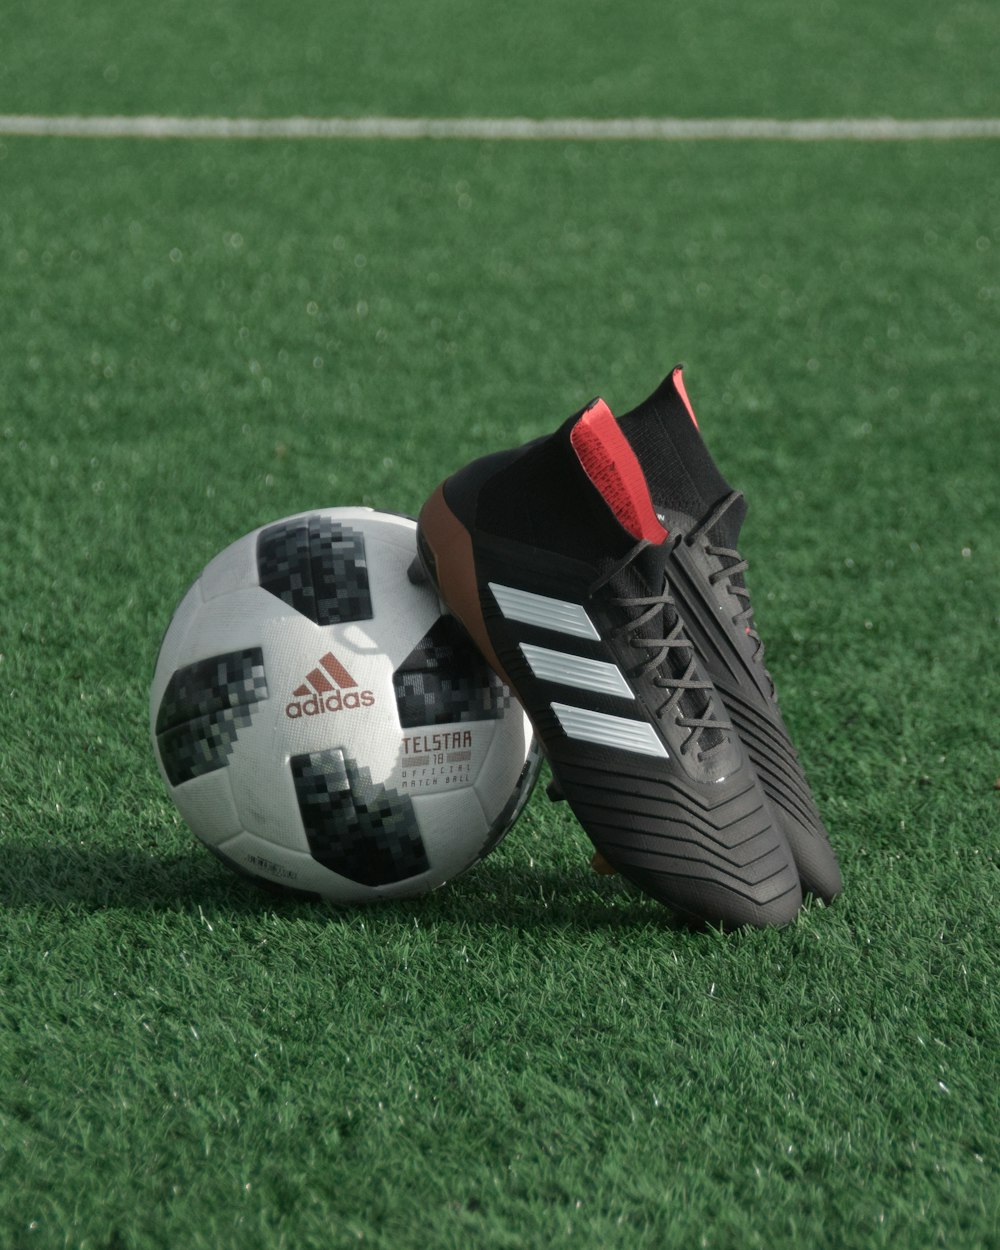 I tacchetti adidas neri si appoggiano al pallone da calcio adidas bianco e nero sull'erba verde